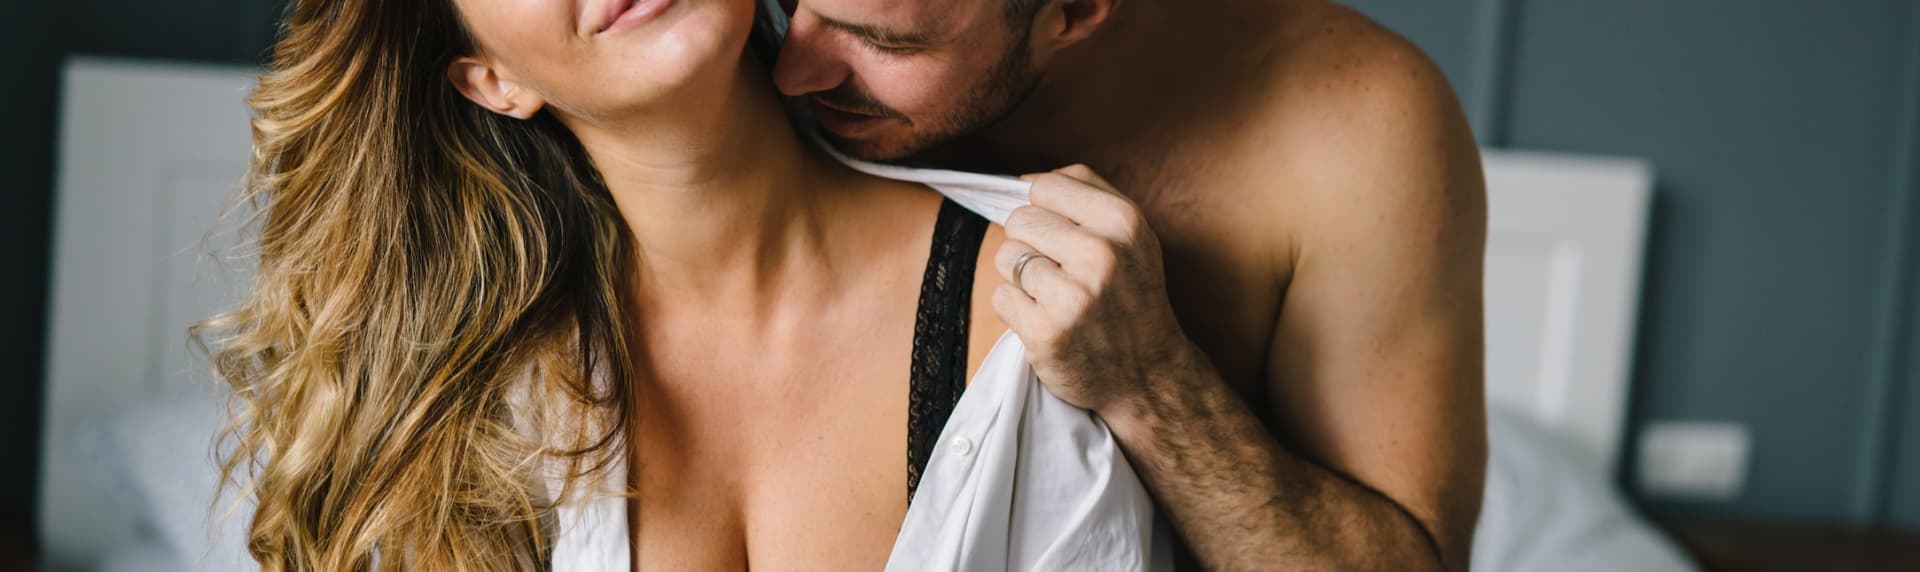 Klubb6 er et gratis datingfællesskab med et erotisk touch